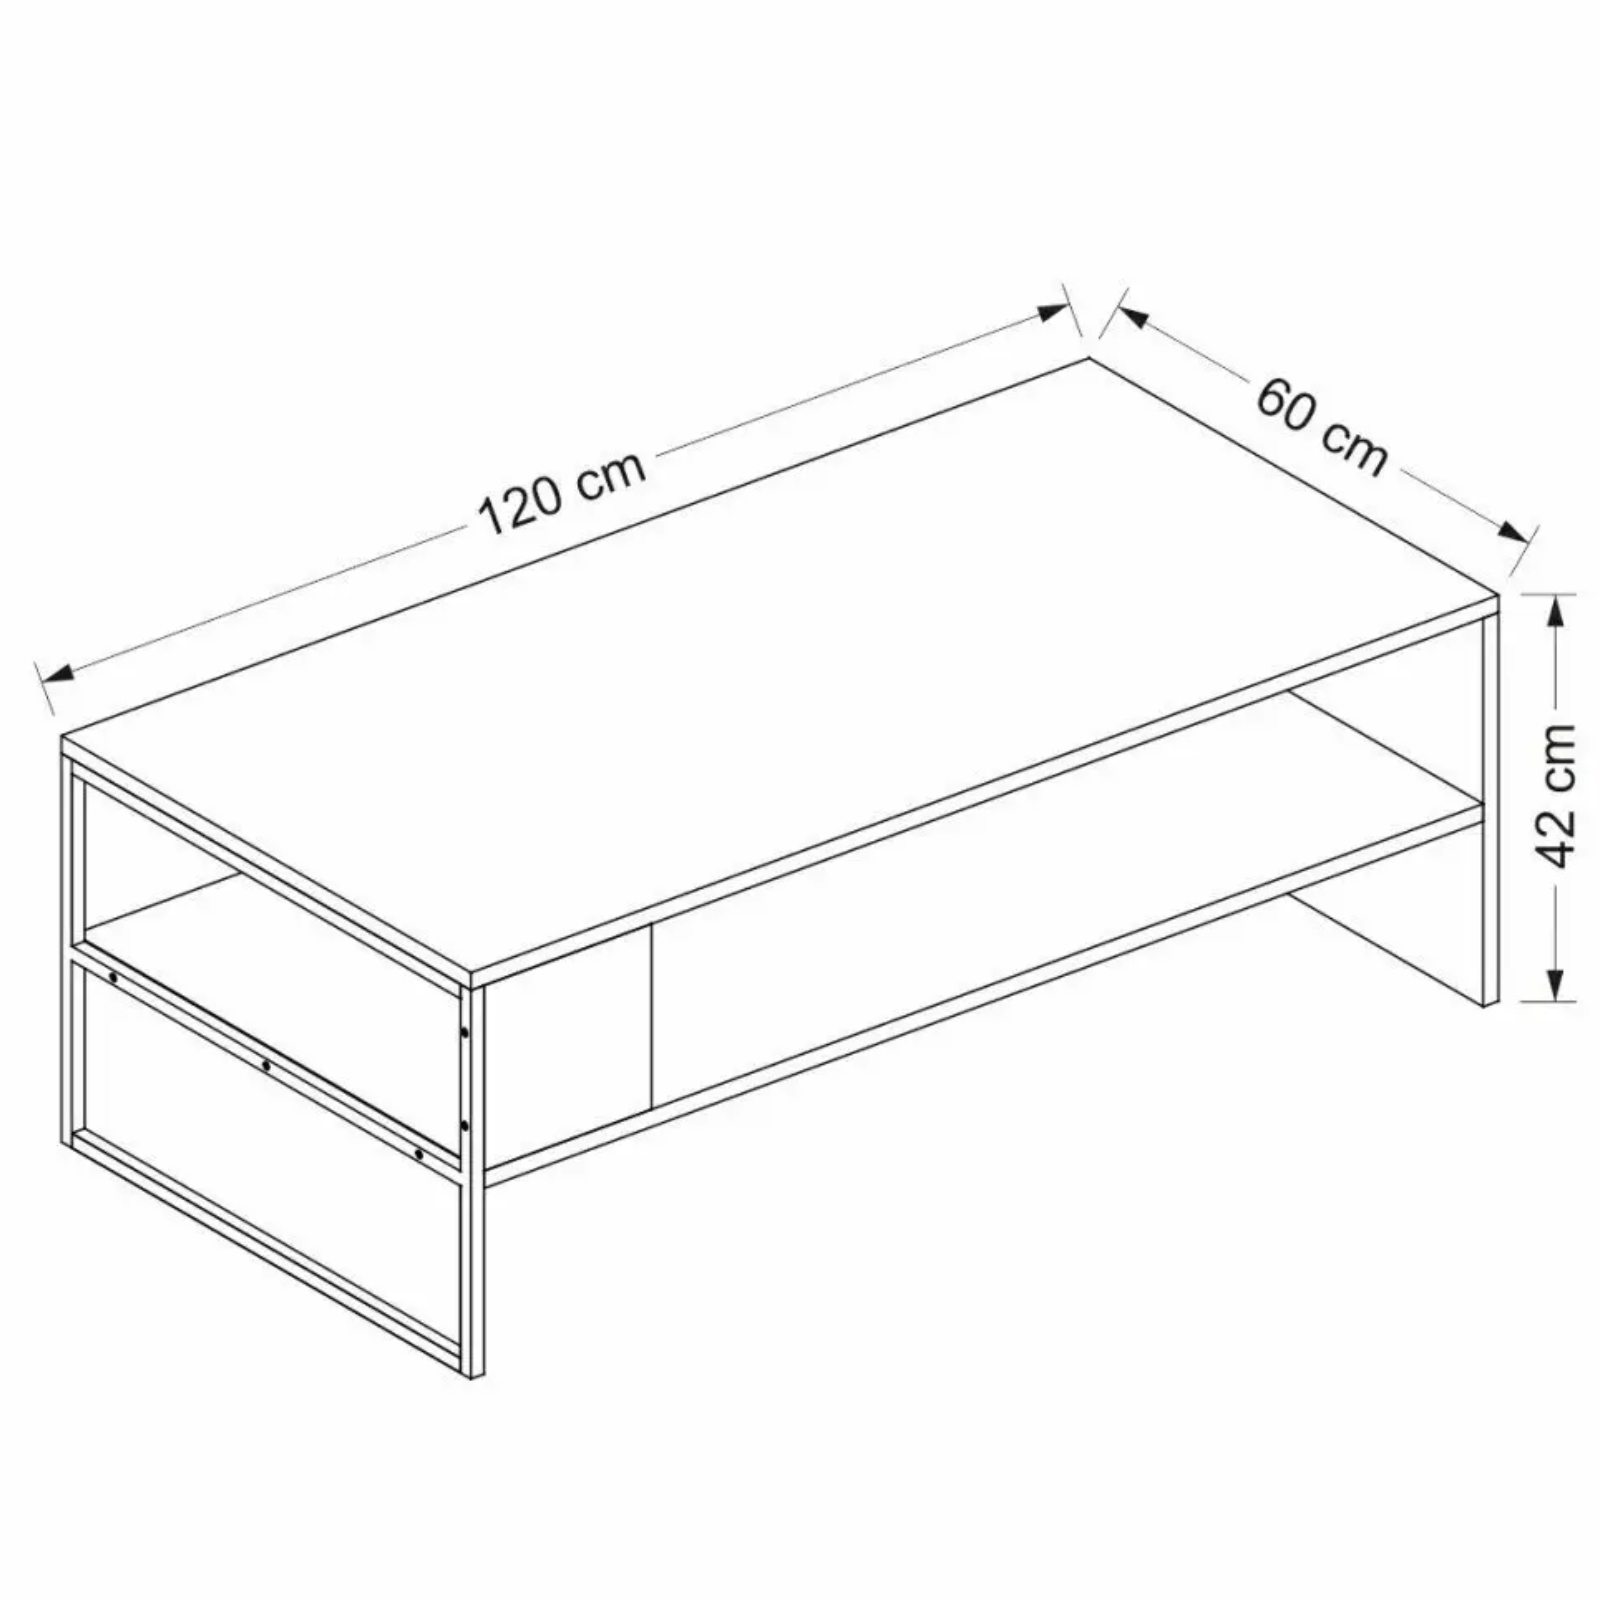 Tavolino rettangolare con ripiano inferiore struttura in metallo nero e piano in truciolare 